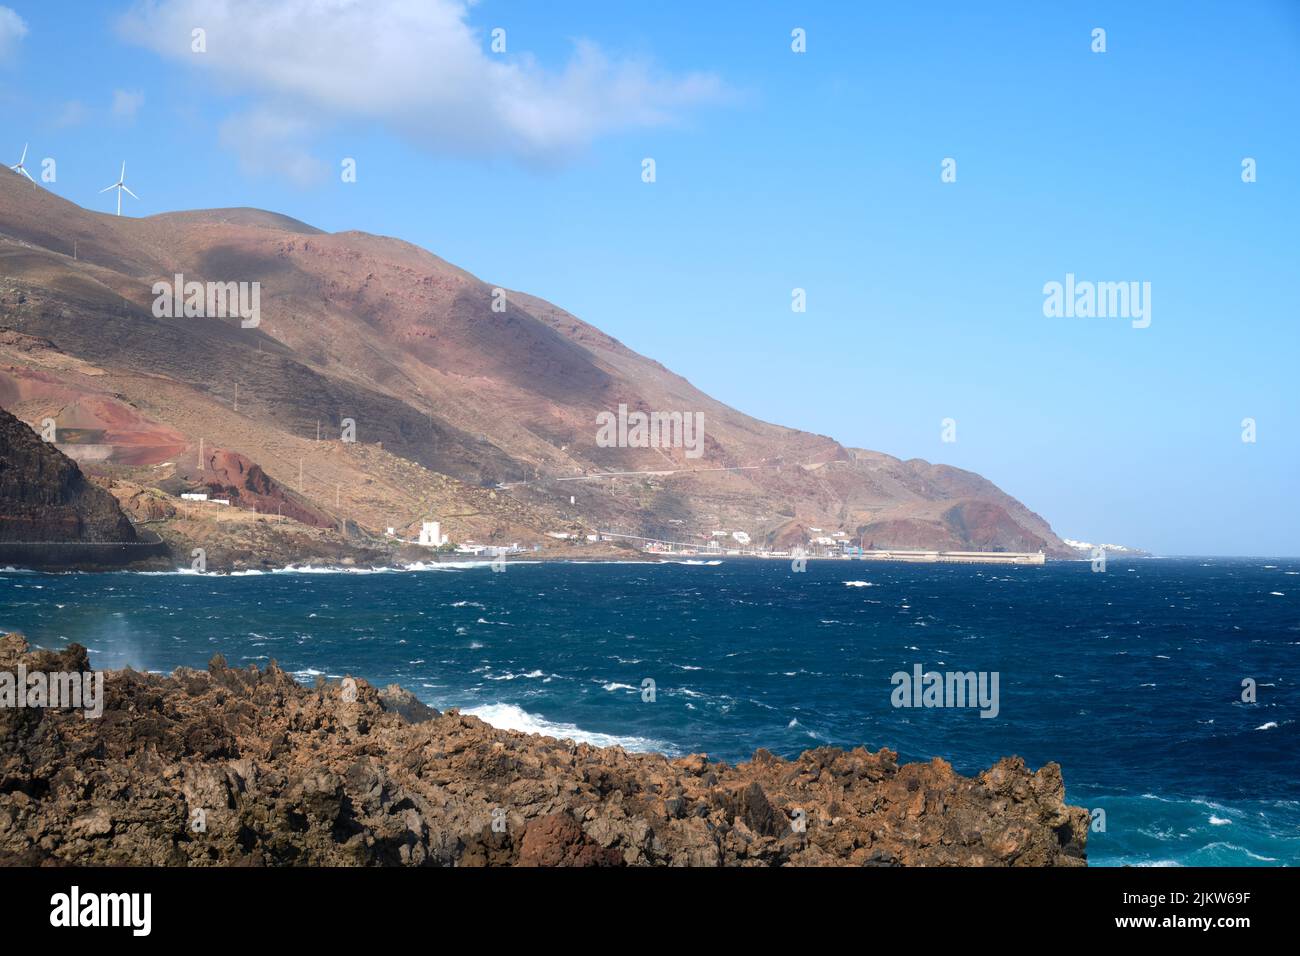 Belle côte volcanique avec mer bleue sur l'île volcanique El Hierro, vue sur le village Puerto de la Estaca. Voyage sur les îles Canaries, Espagne. Banque D'Images